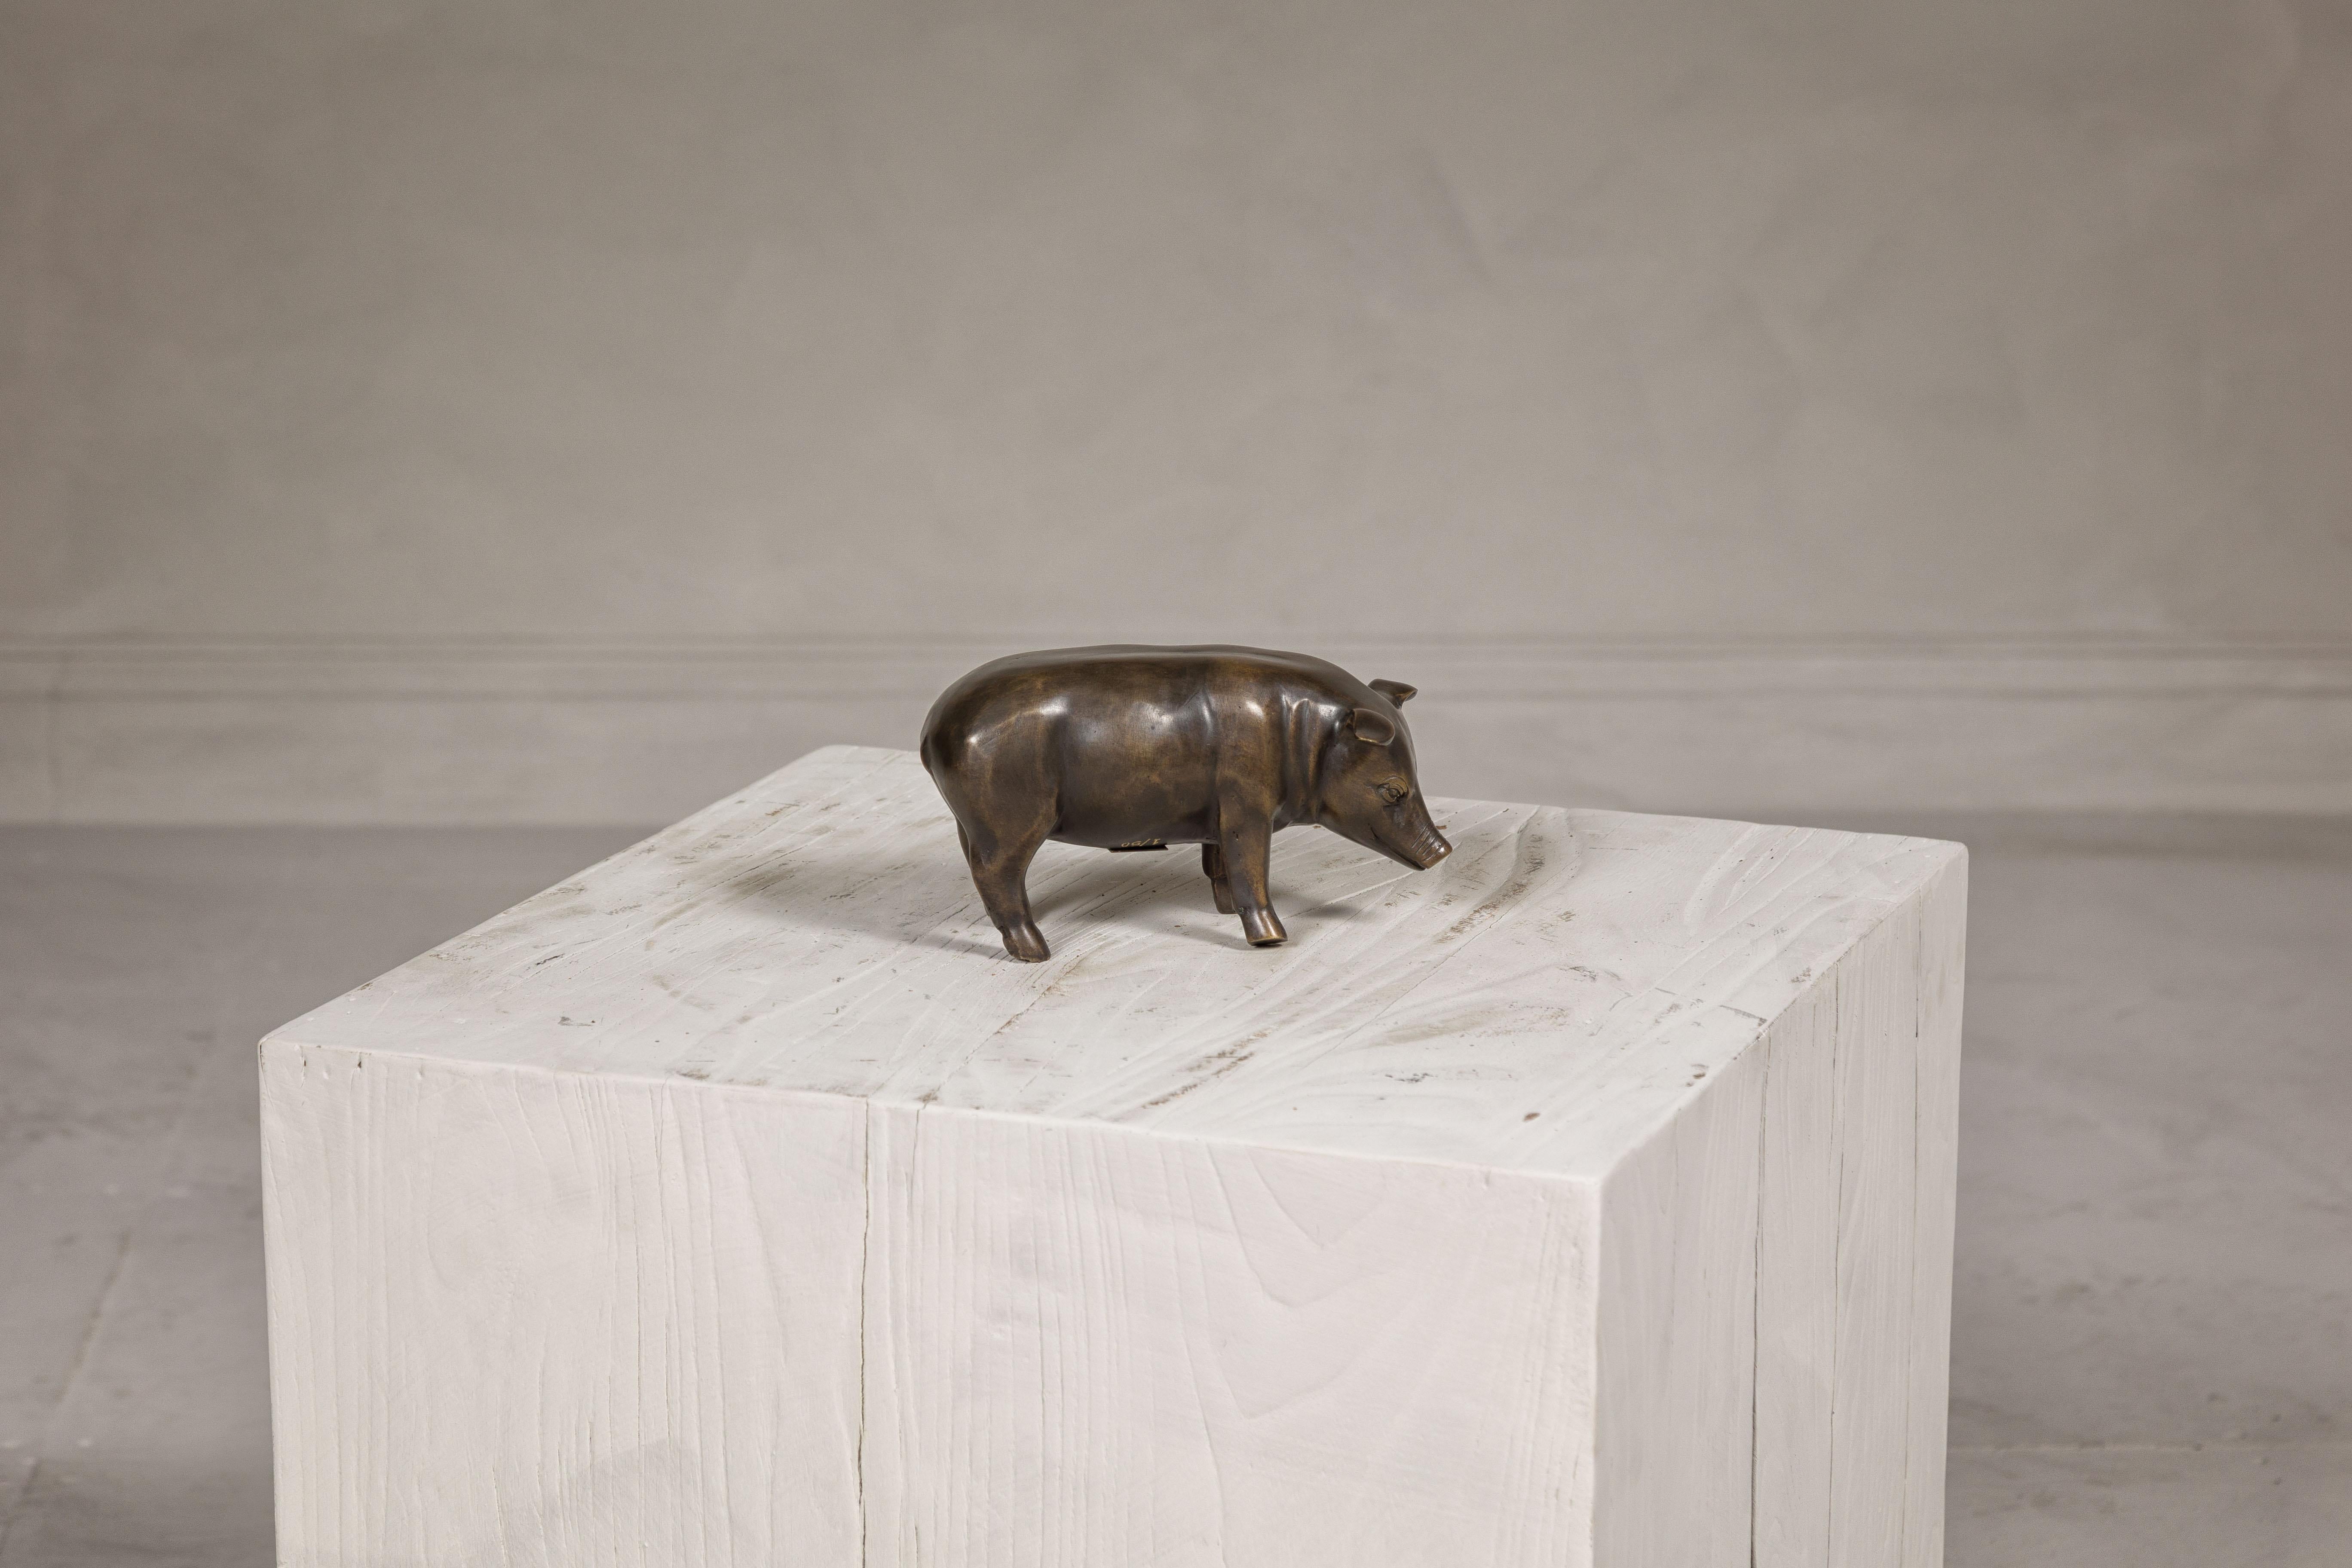 Statuette de cochon en bronze coulé, en édition limitée, de la Collection Randolph Rose. Réalisée avec des détails méticuleux, cette statuette de cochon en bronze coulé en édition limitée est une pièce charmante de la Collection Randolph Rose.